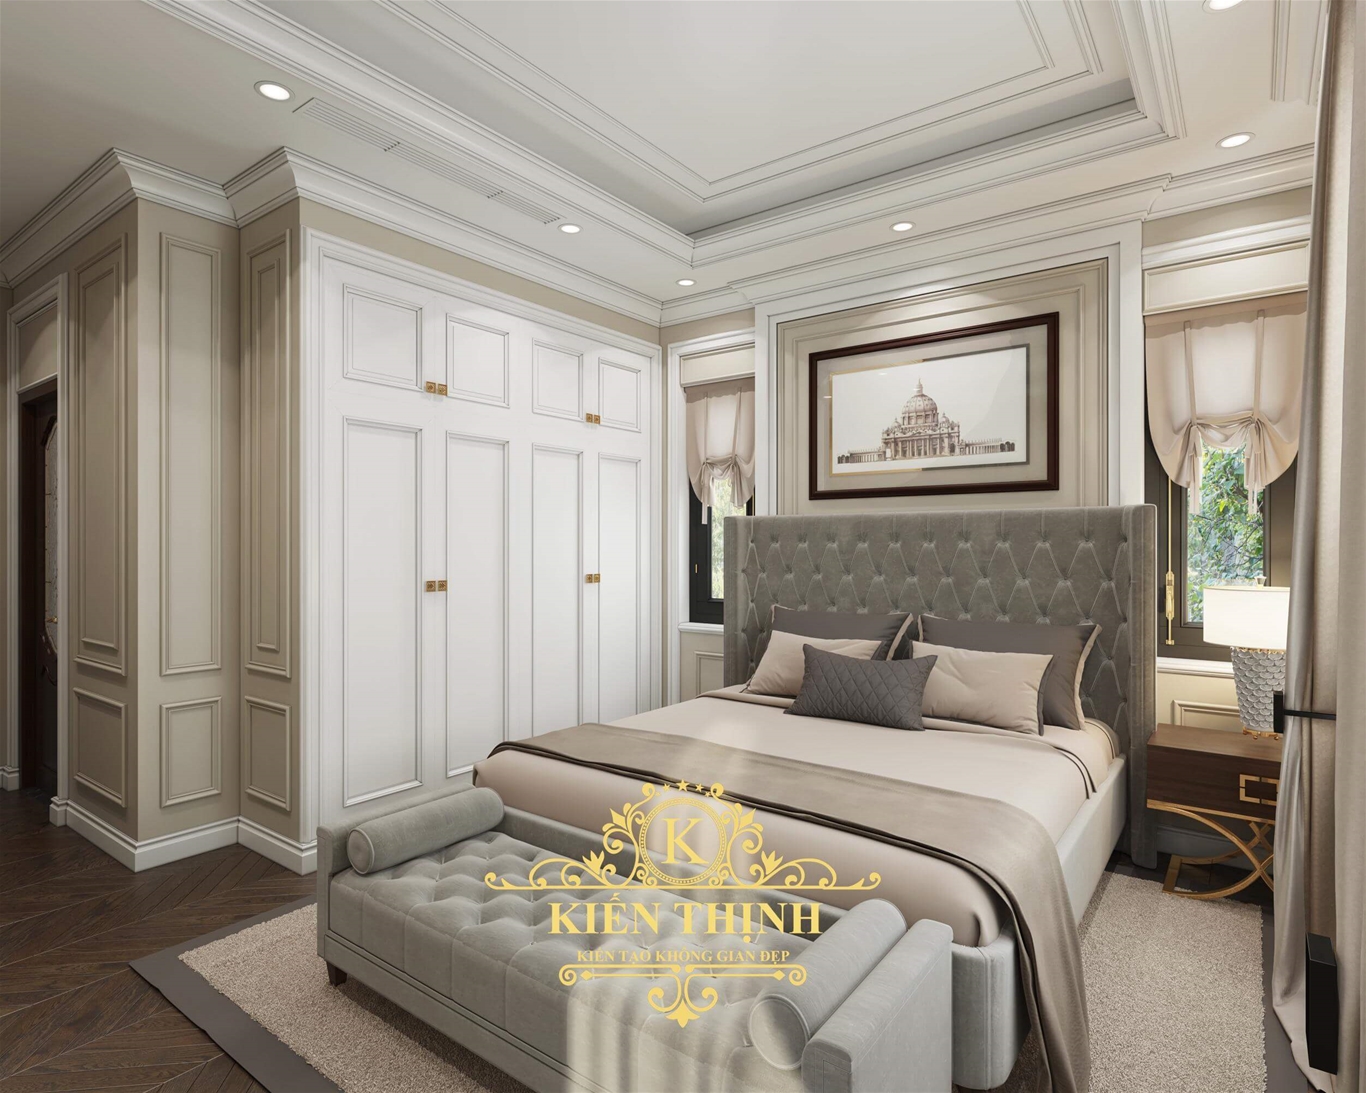  Mẫu thiết kế nội thất phòng ngủ biệt thự vườn phong cách hiện đại 2 tầng đẹp gây thương nhớ tại Quảng Trịt